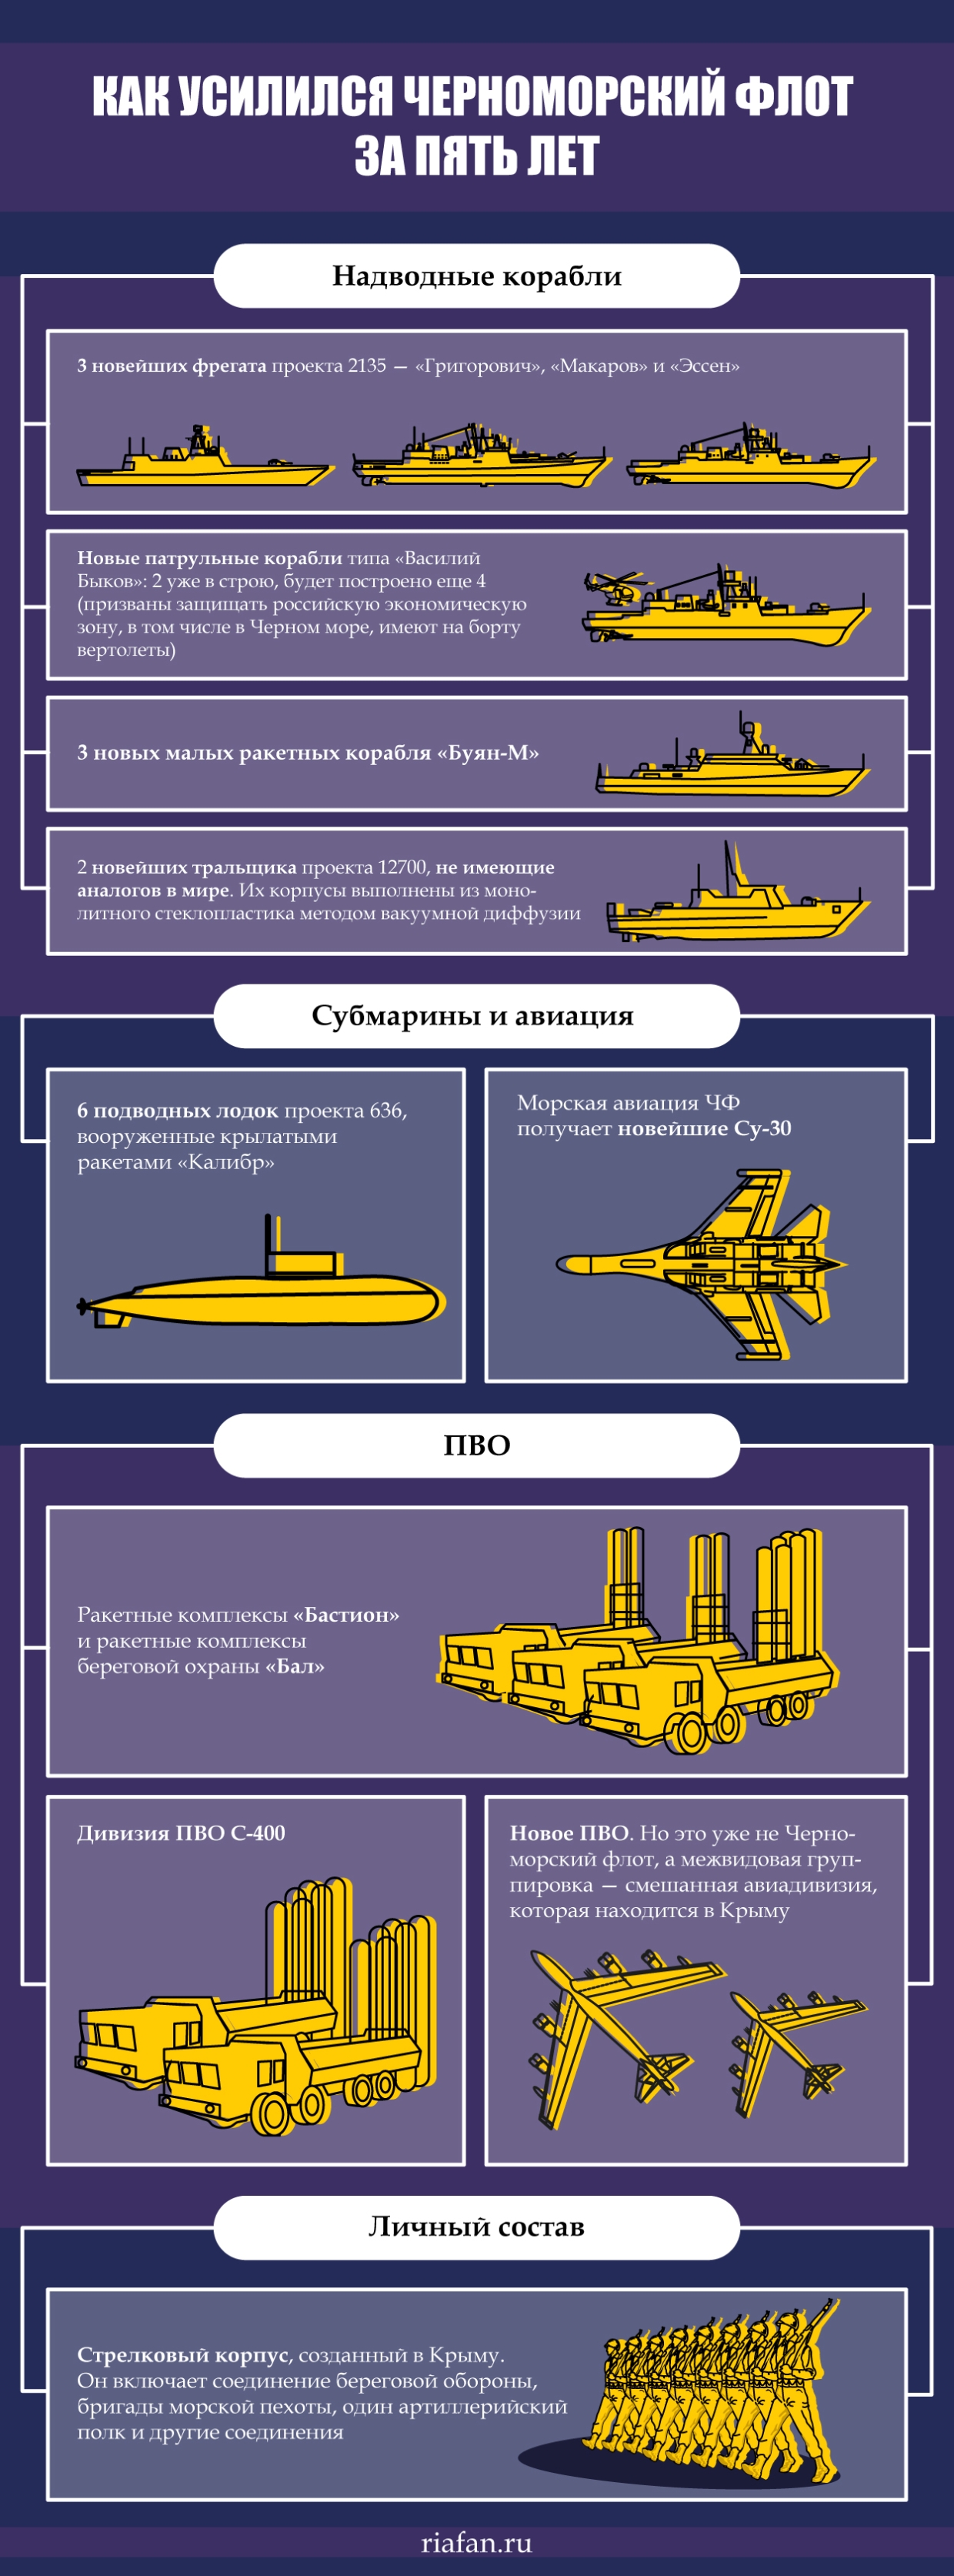 Швыткин ответил на жалобы главкома ВМС Украины по поводу усиления российского флота